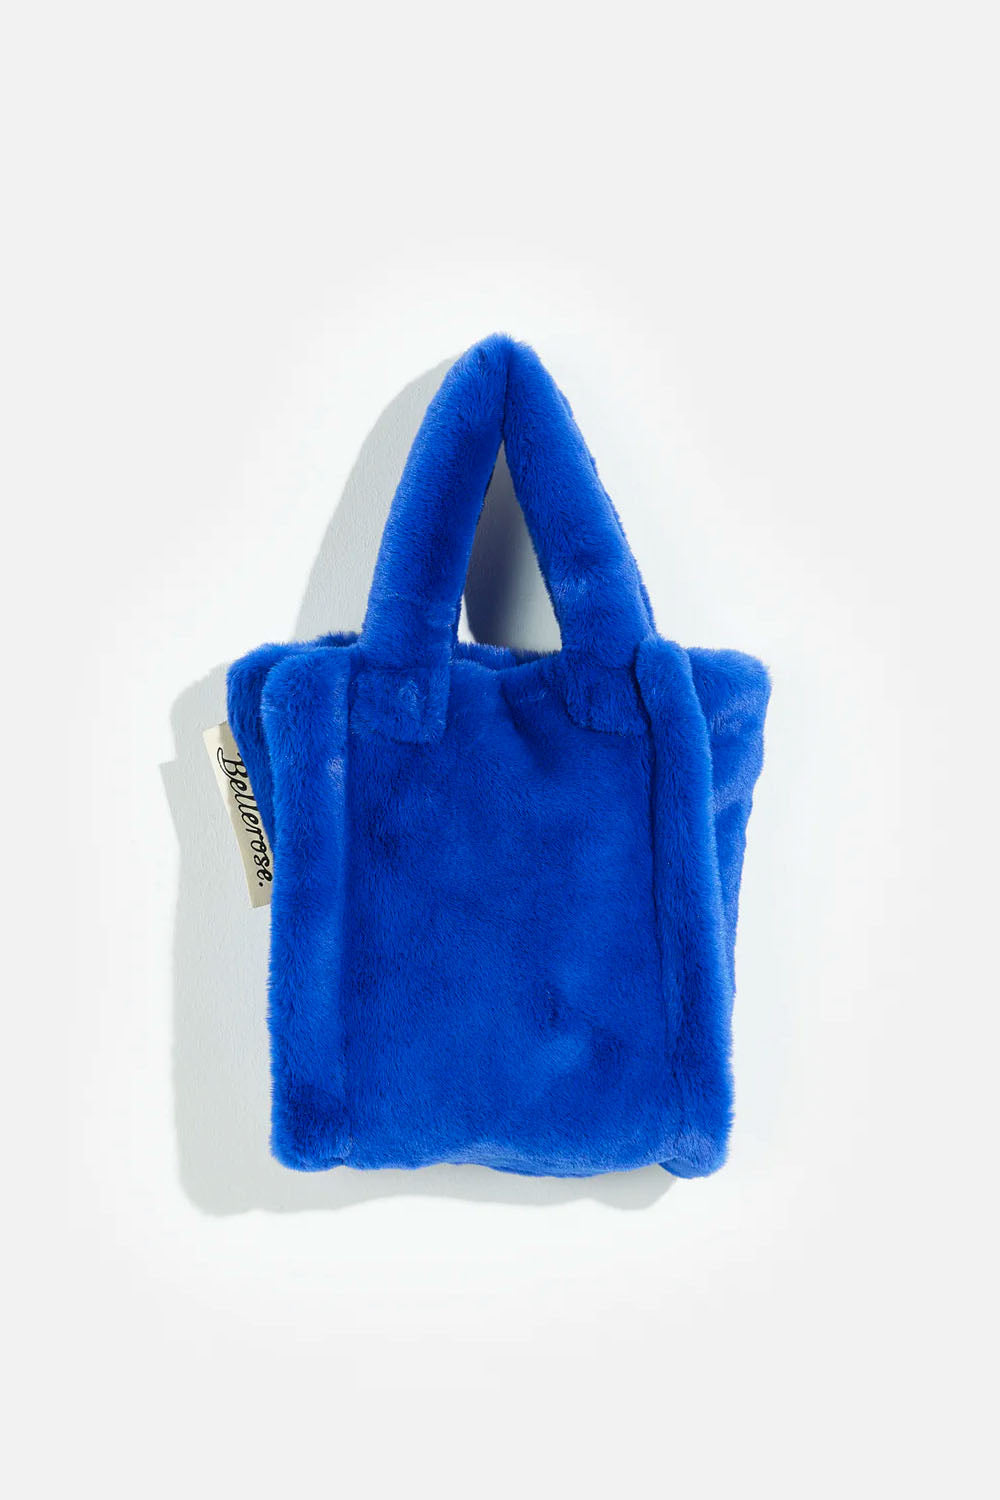 Bellerose - Edoux Bag: Lazuli